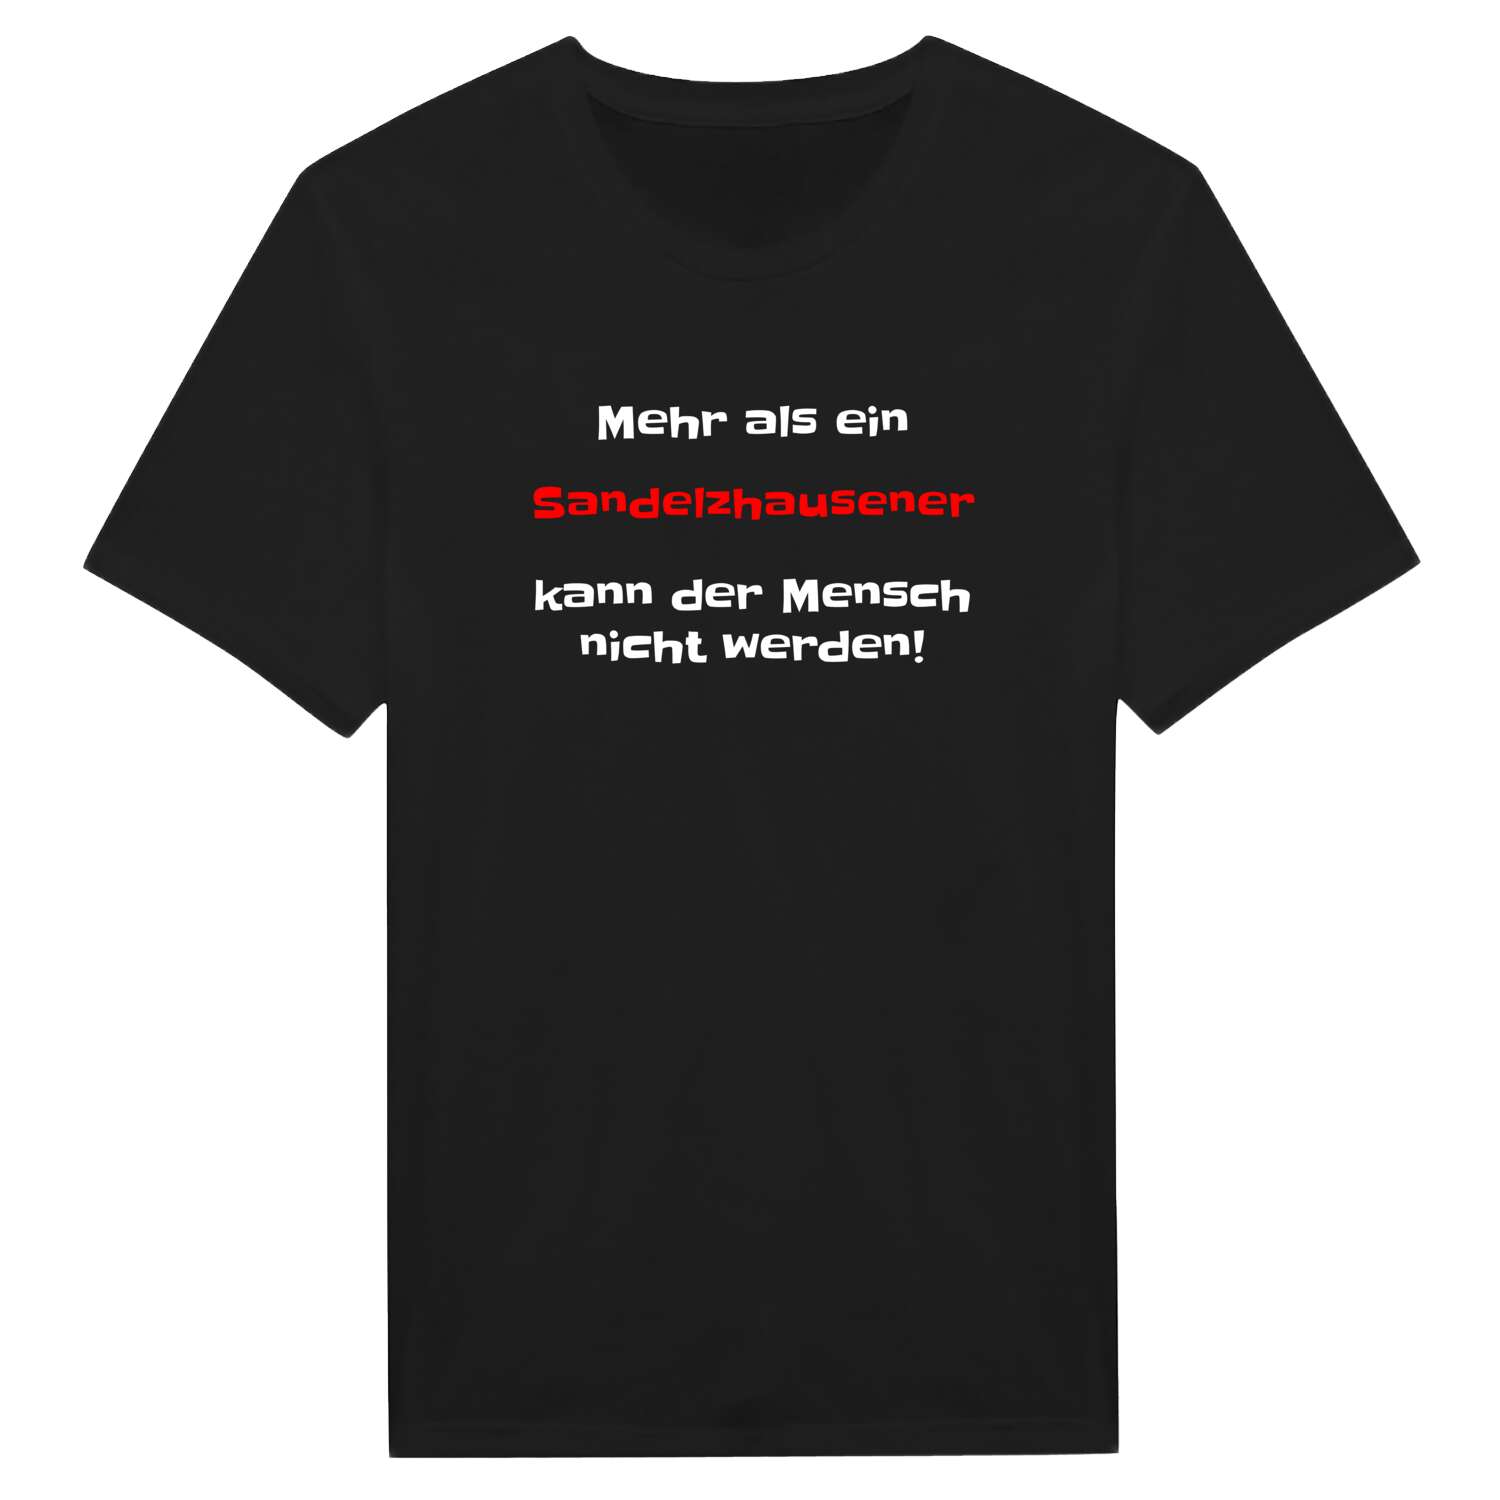 Sandelzhausen T-Shirt »Mehr als ein«